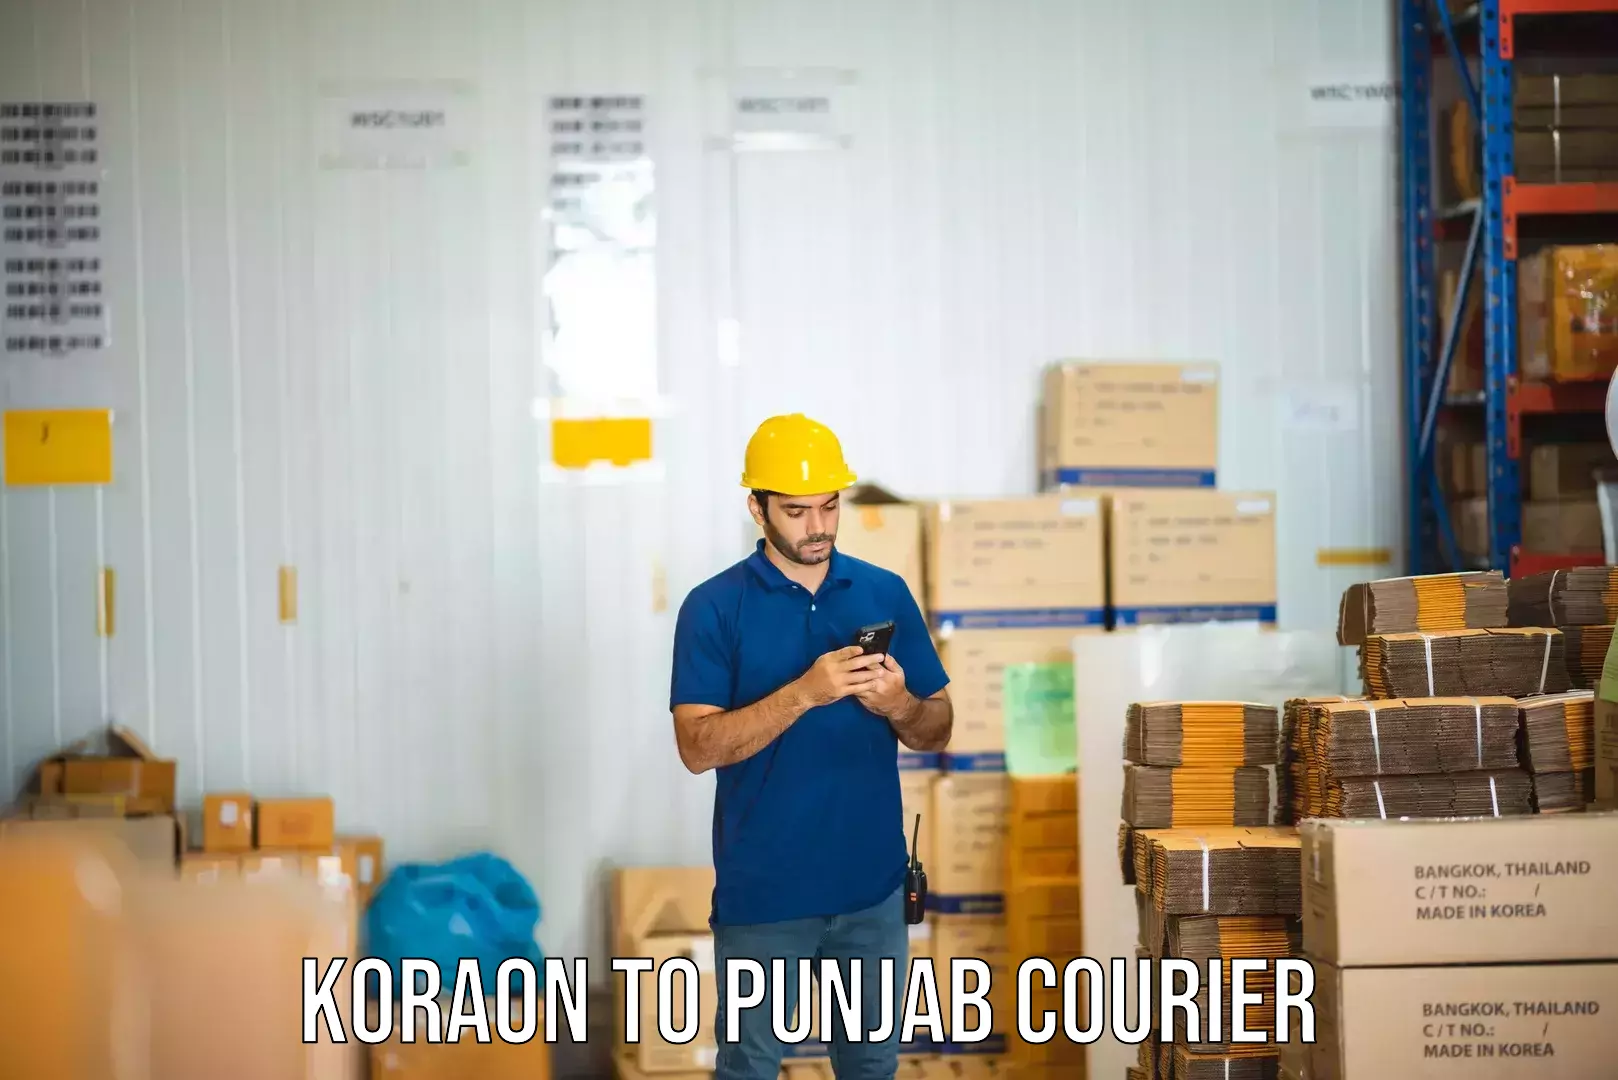 Express package handling Koraon to Batala